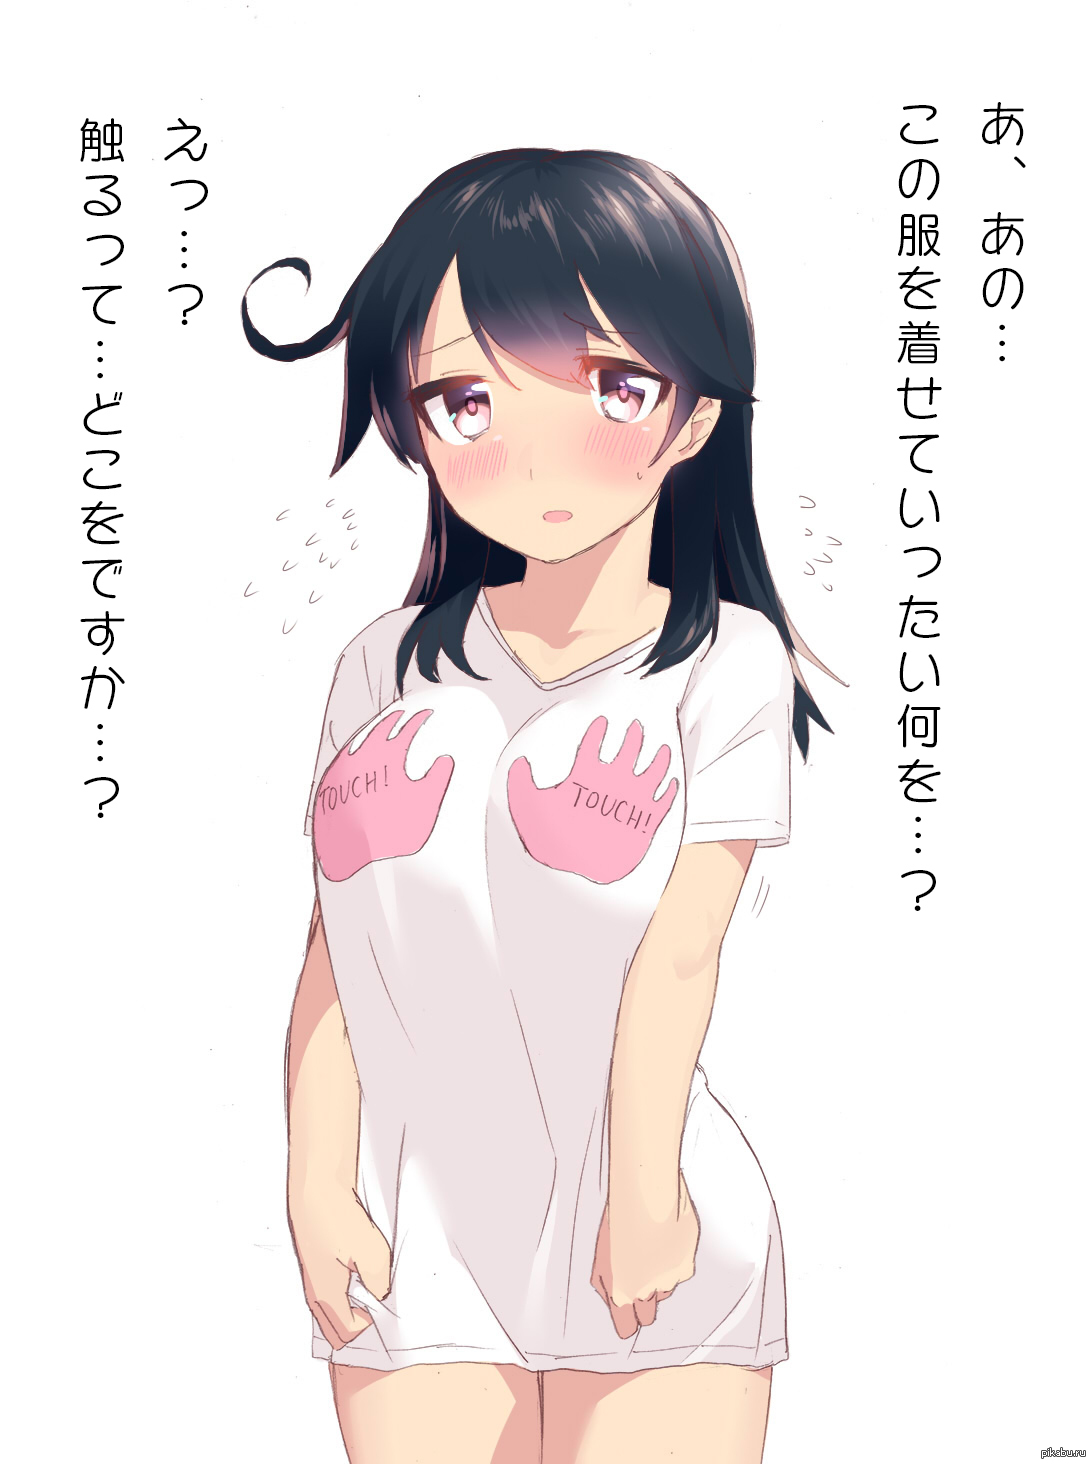 T Shirt Hentai